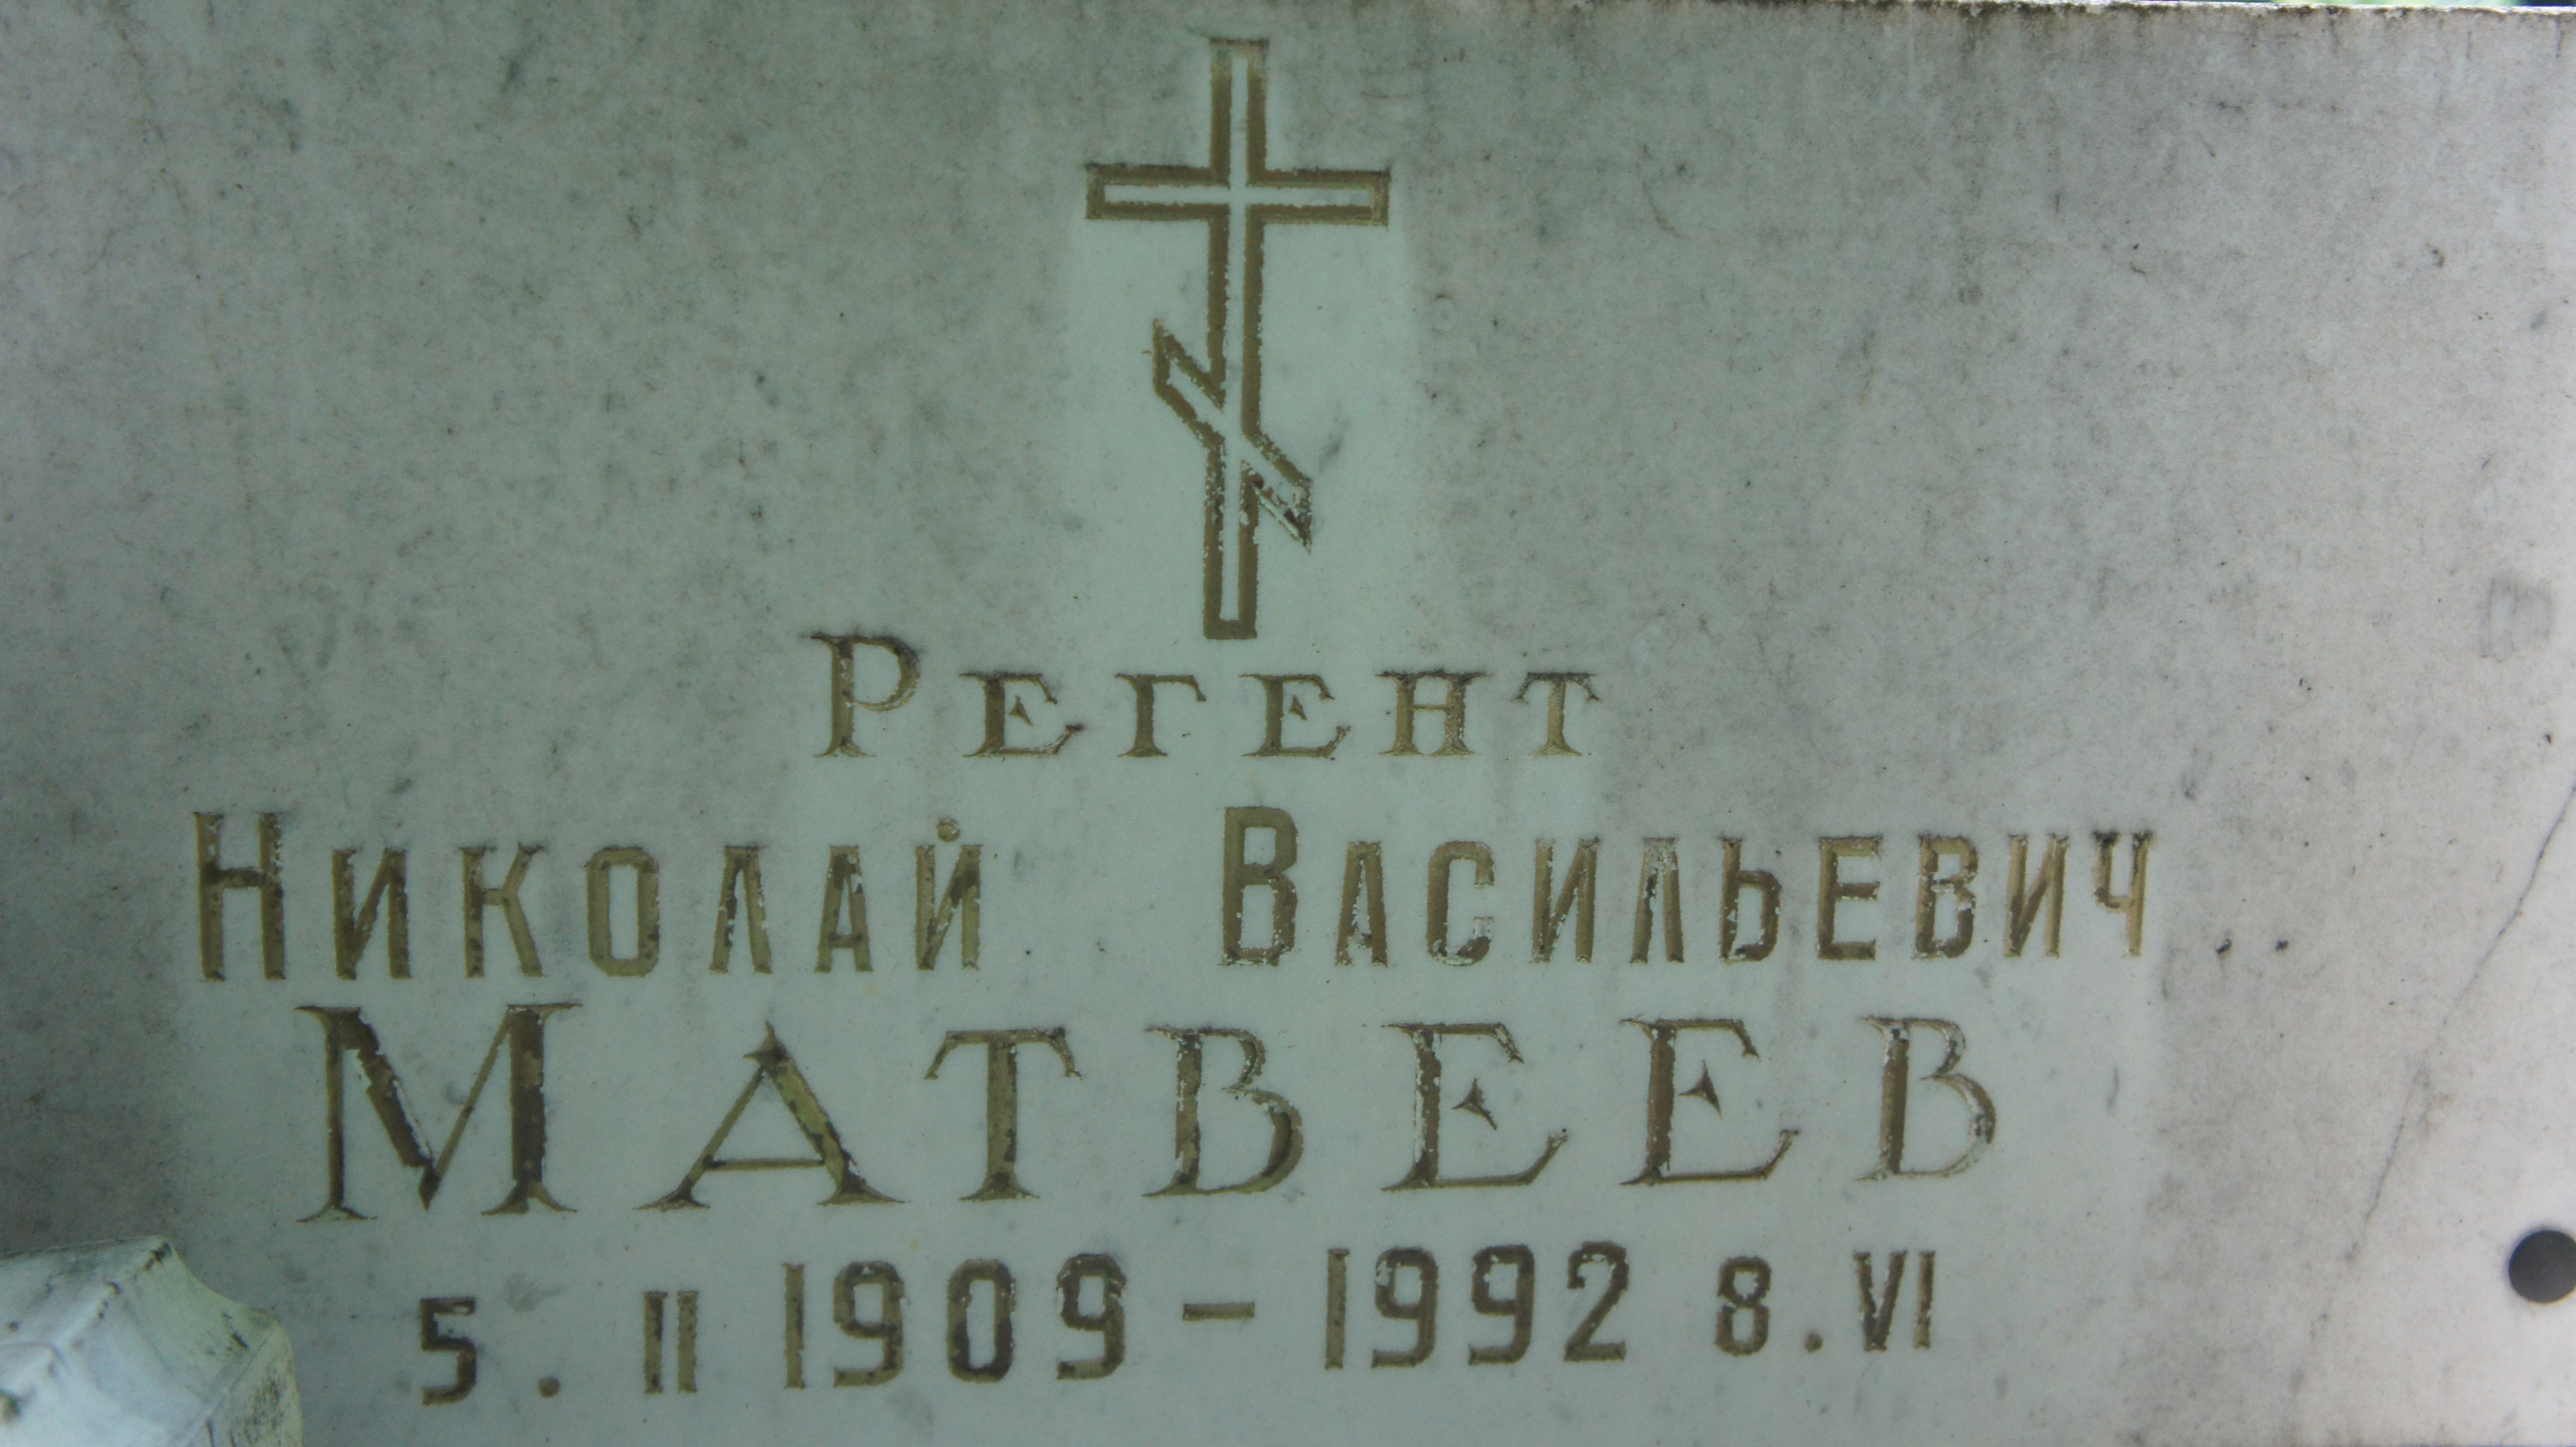 Фамилия николая васильевича при рождении